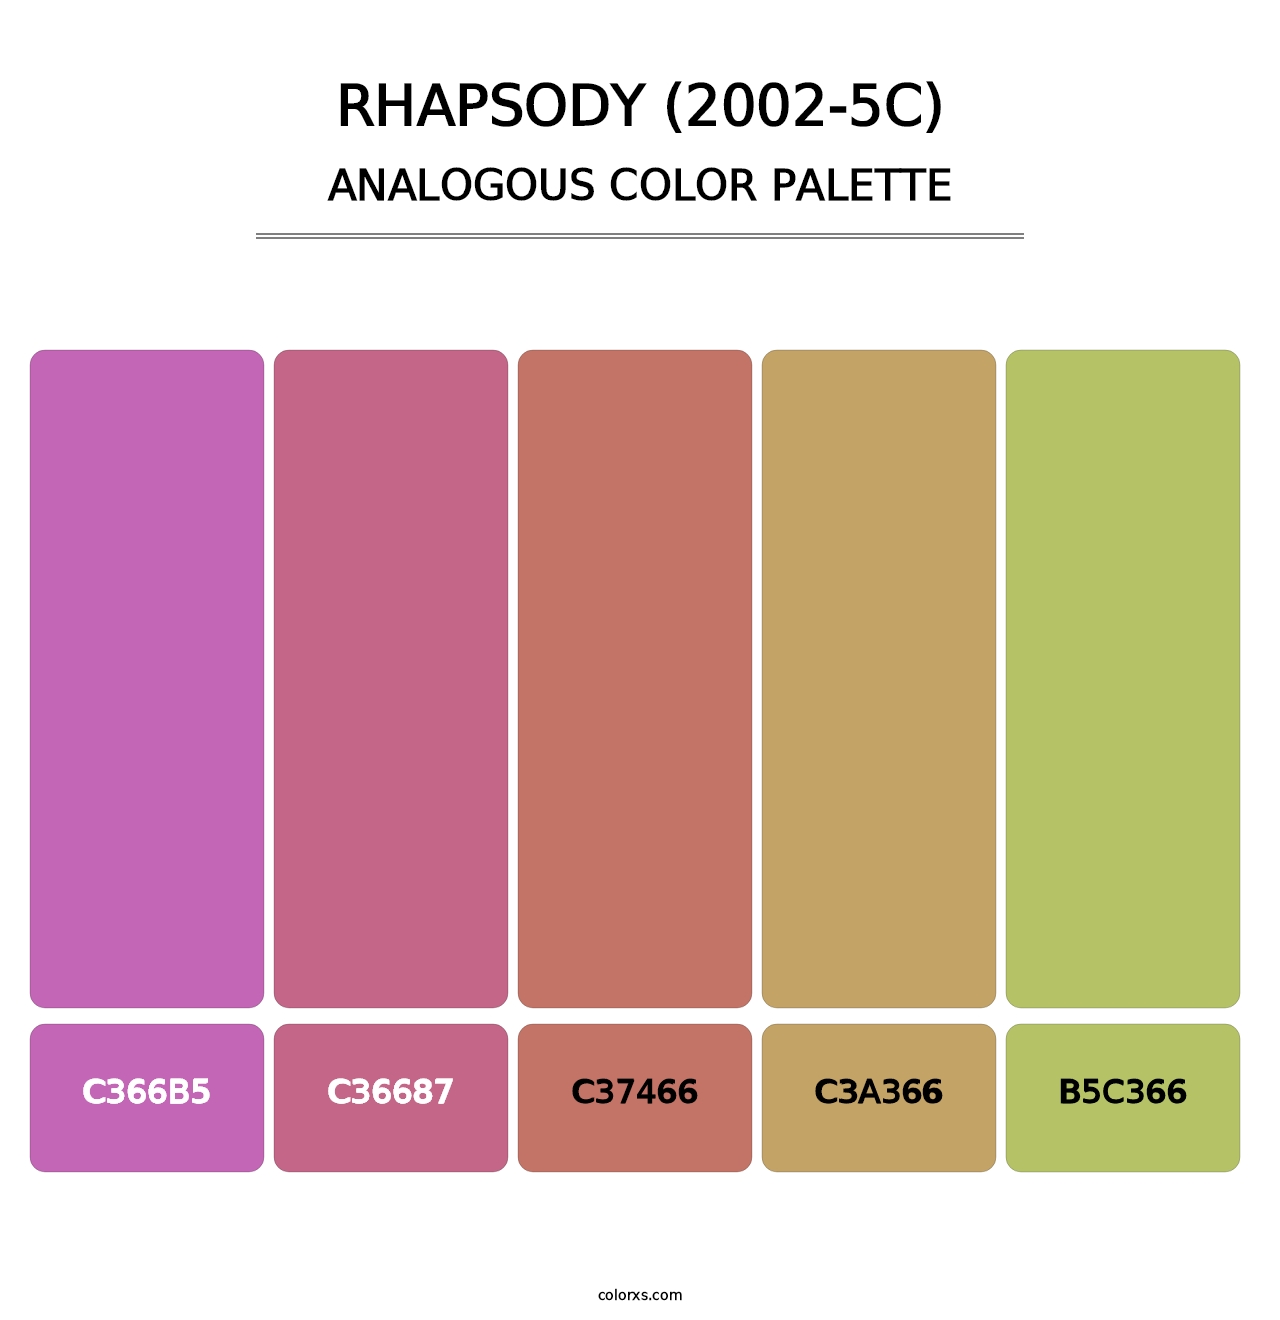 Rhapsody (2002-5C) - Analogous Color Palette